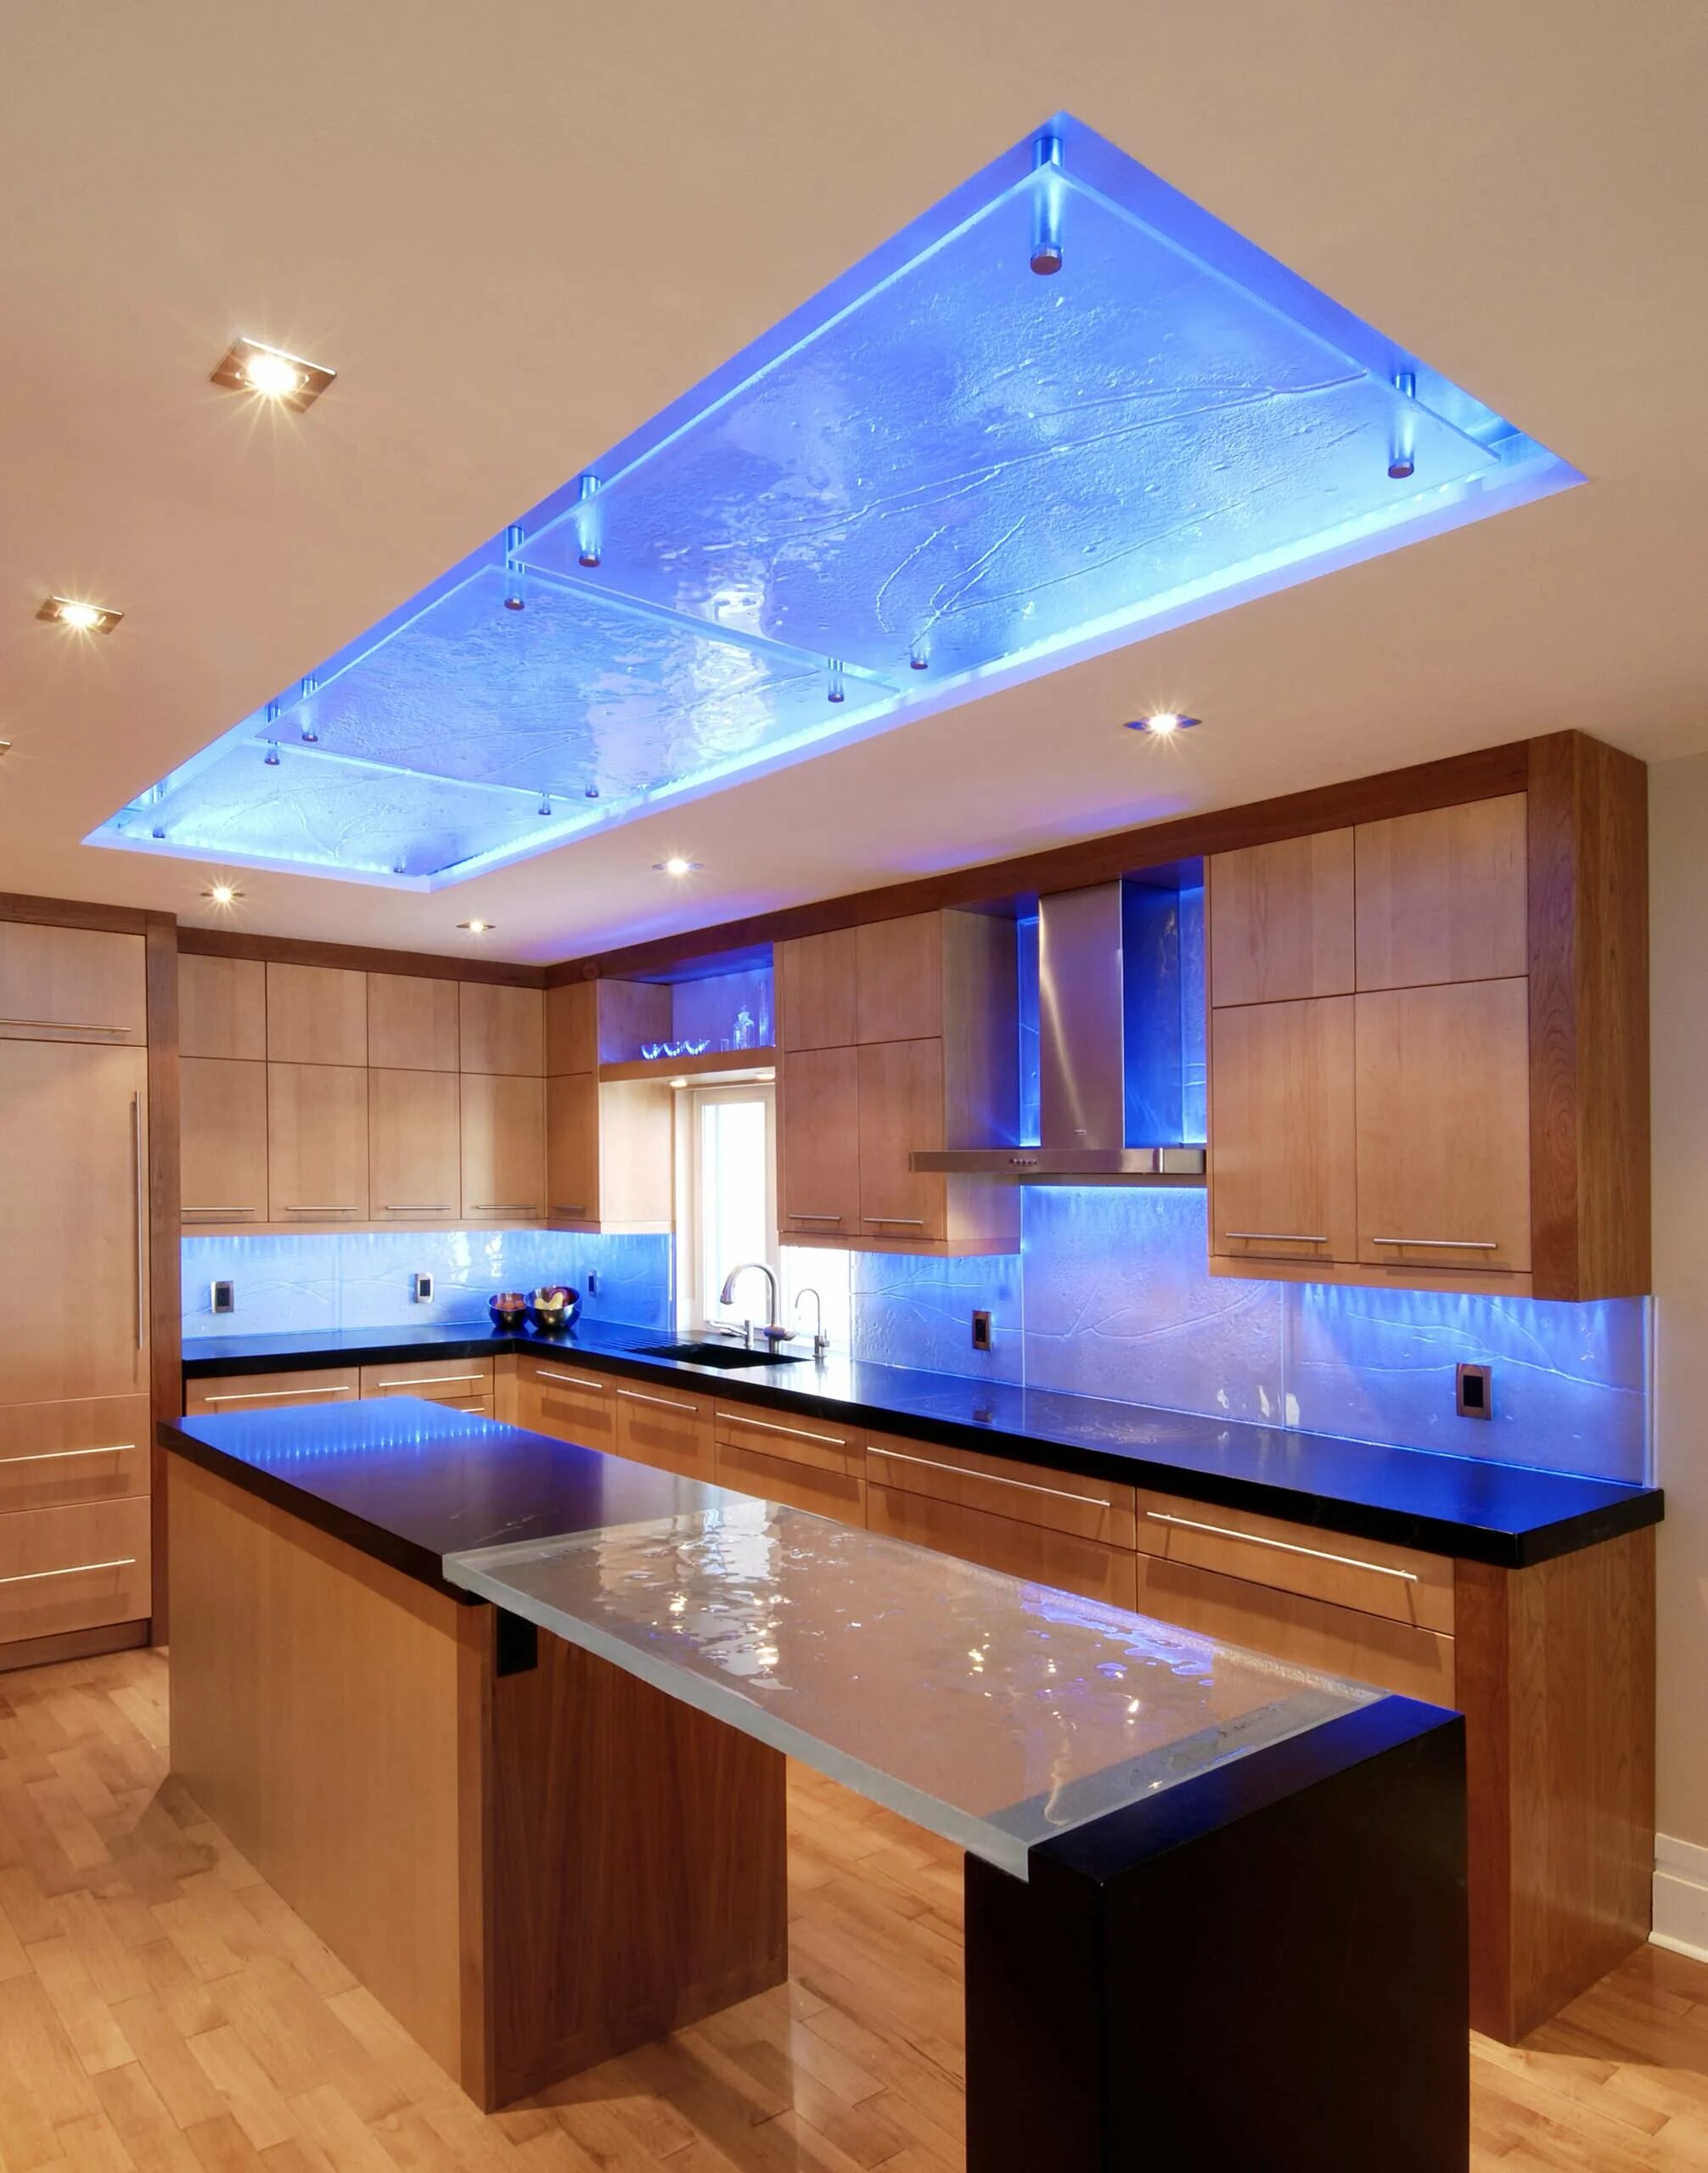 Освещение на кухне. Кухонный гарнитур с подсветкой. Светодиодная подсветка для кухни. Потолок с подсветкой. Потолок кухня видео